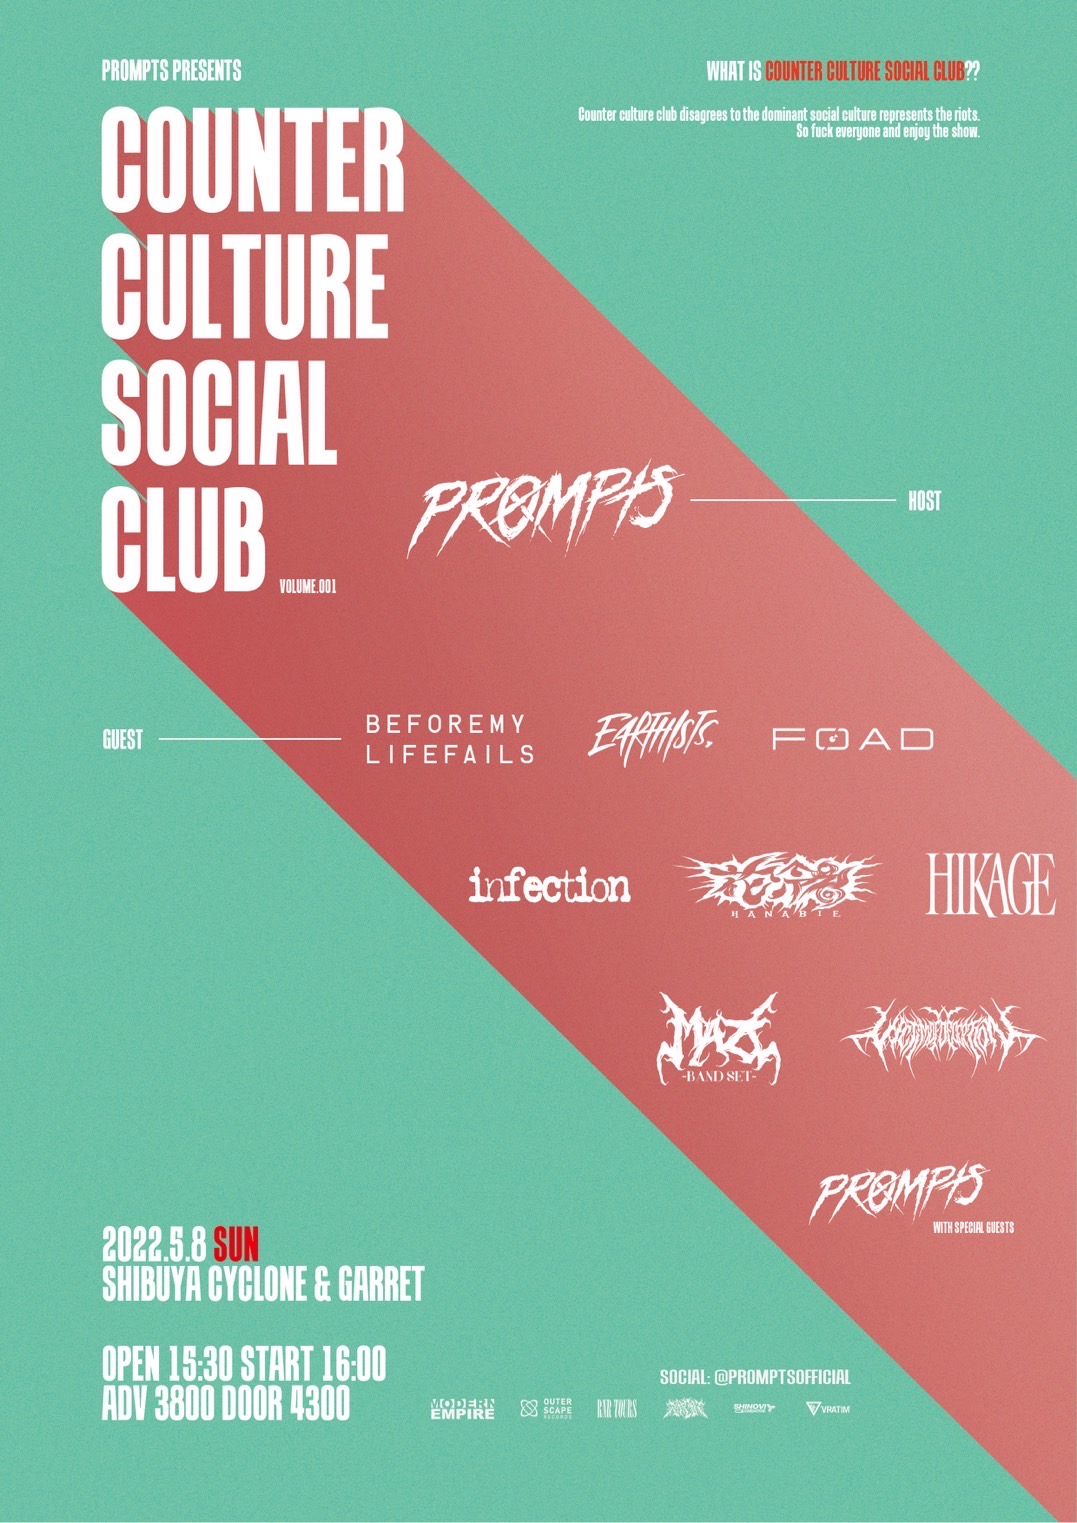 Prompts pre."Counter Culture Social Club"